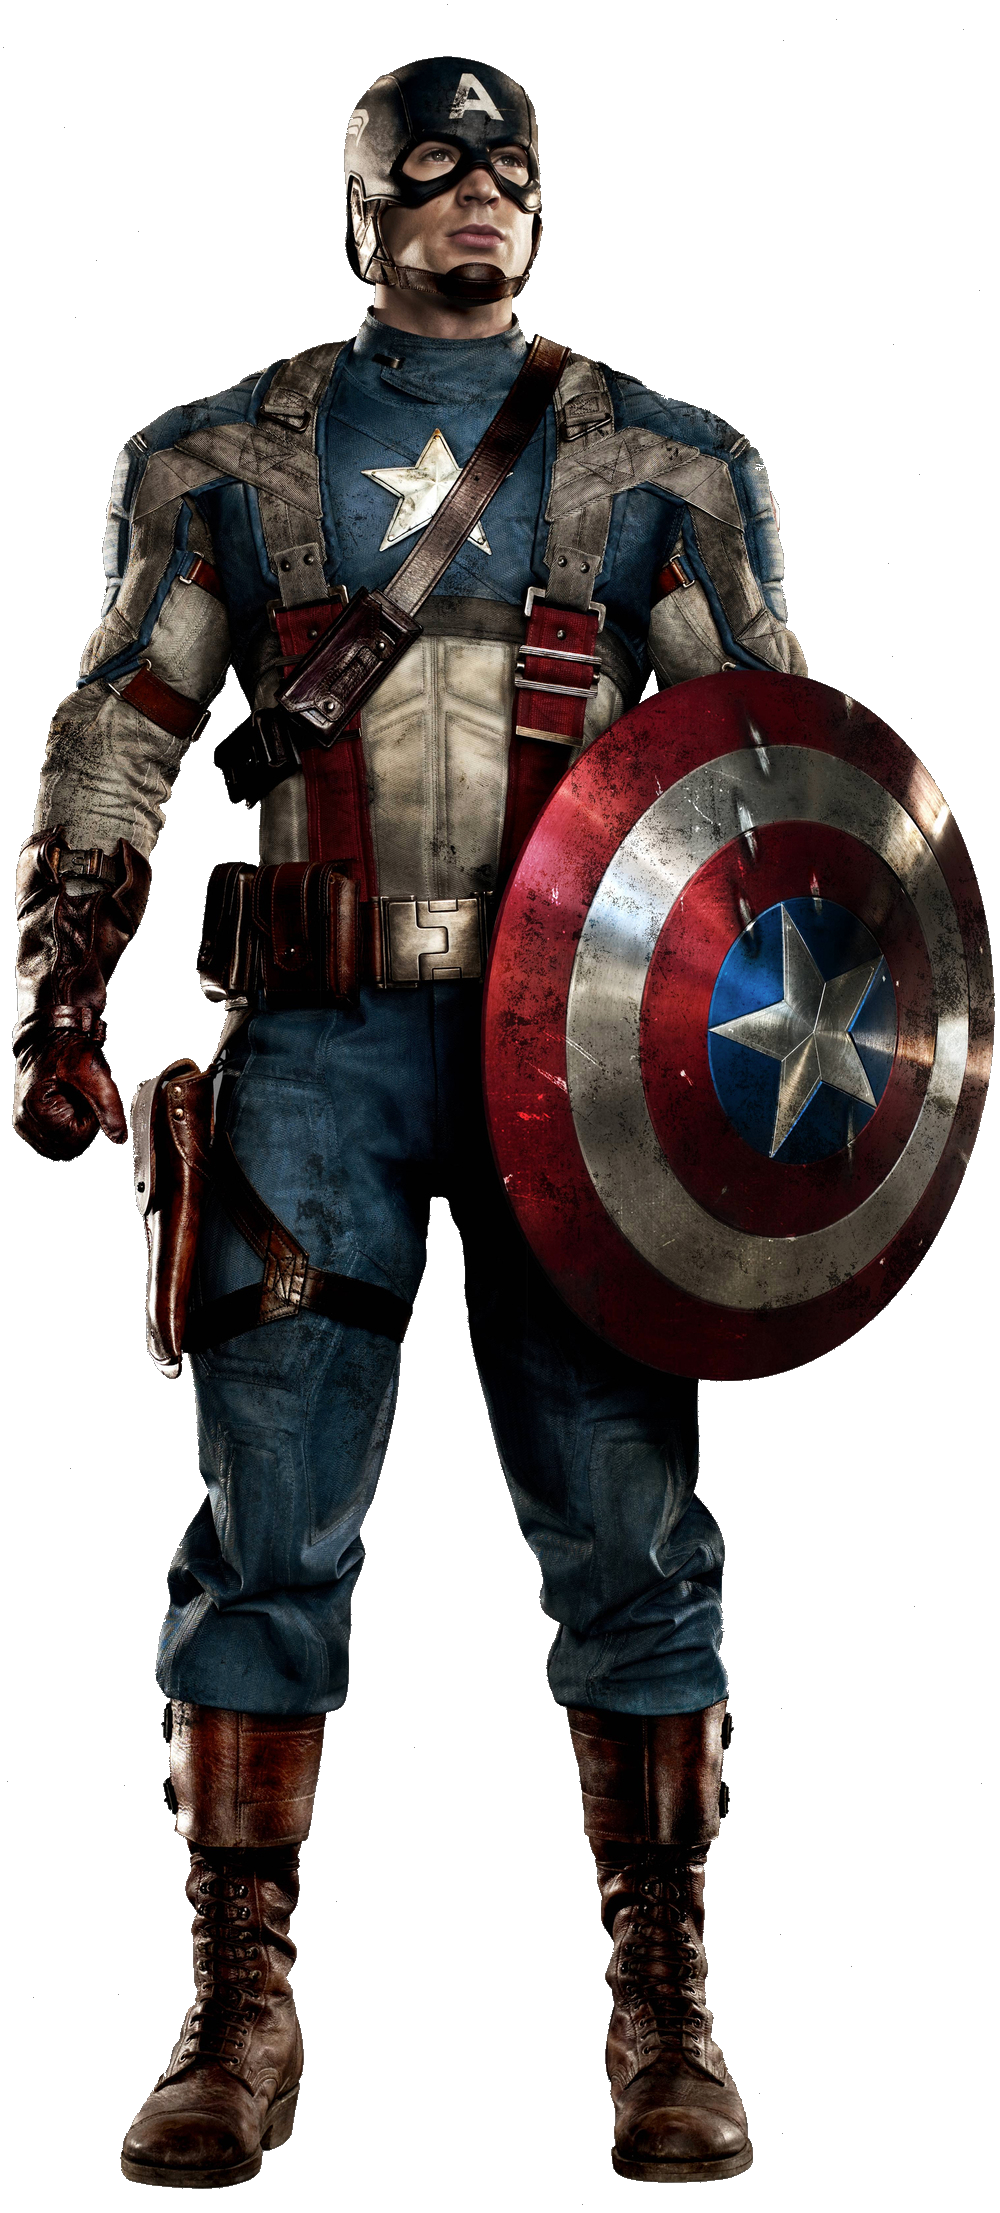 Captain America (1990 film) - Wikipedia